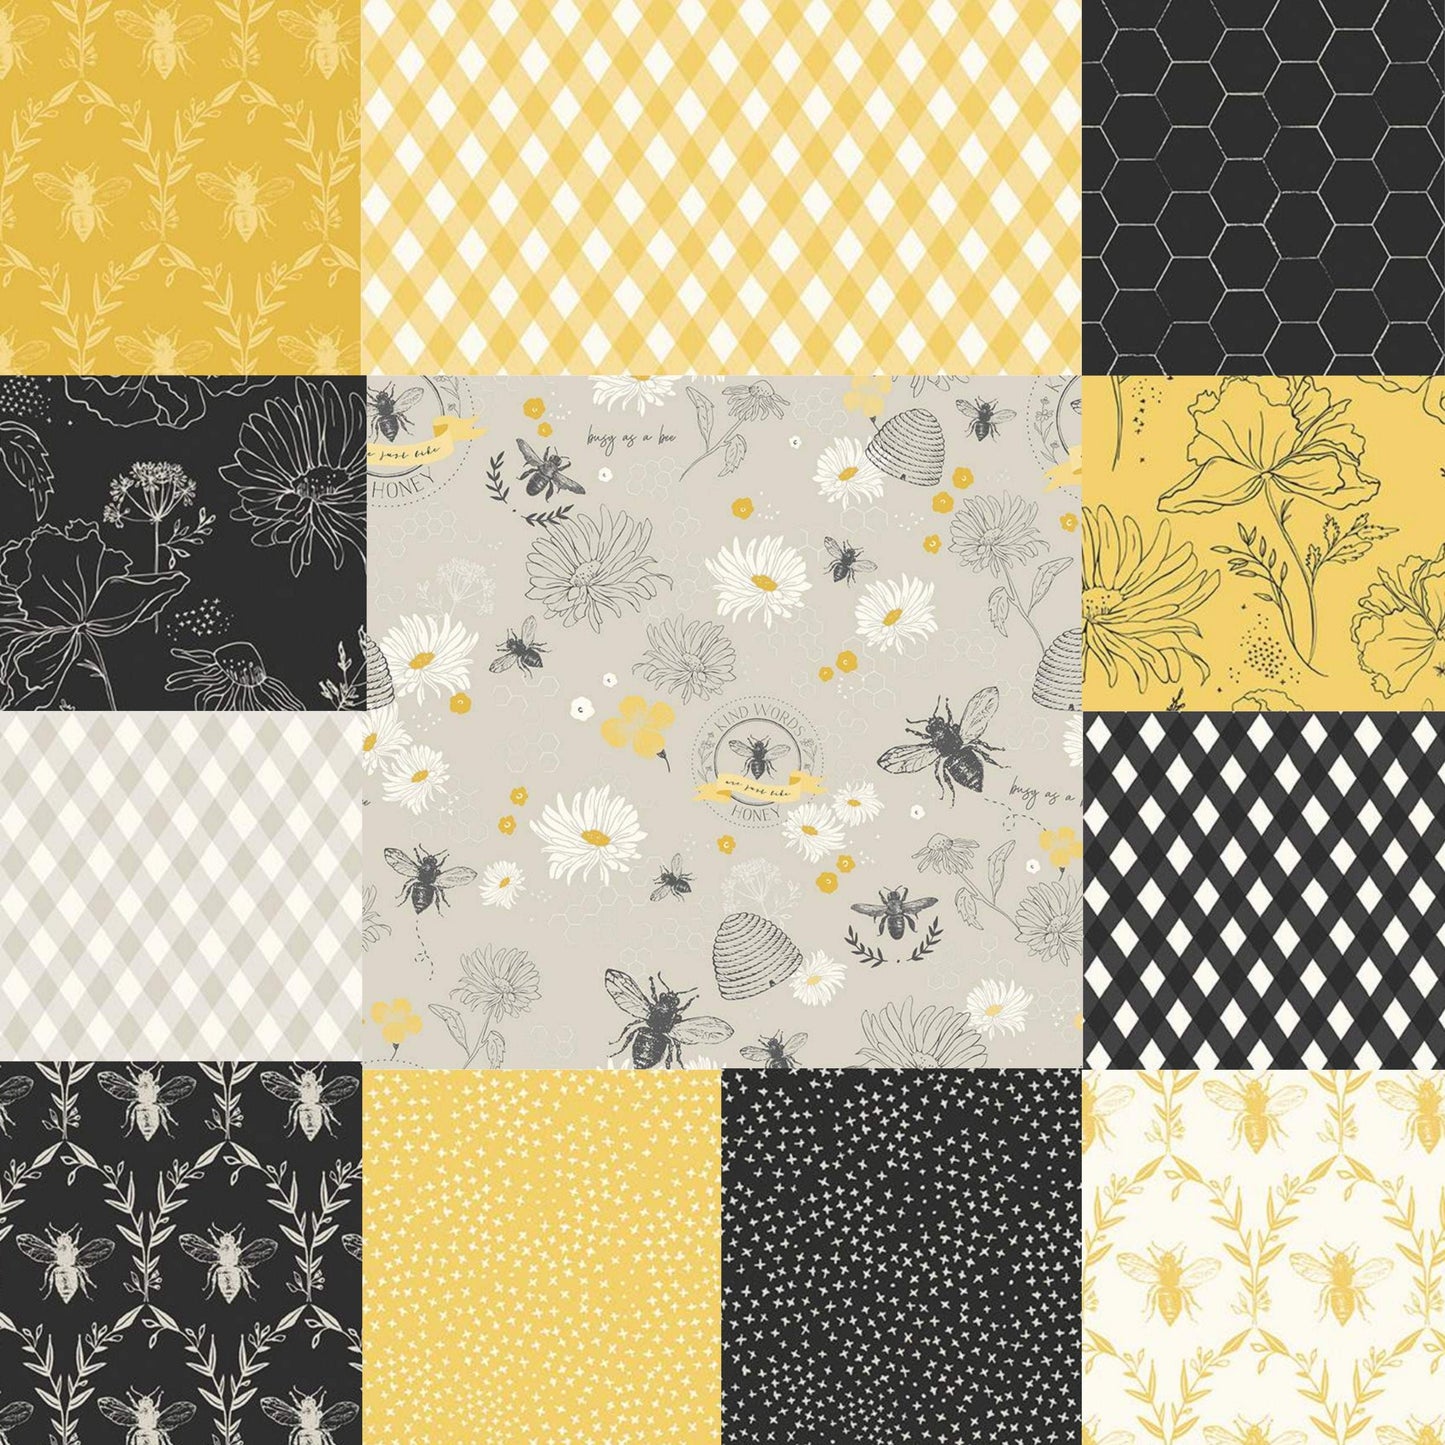 Honey Bee Criss Cross Daisy - LAMINATED Cotton Fabric - Riley Blake